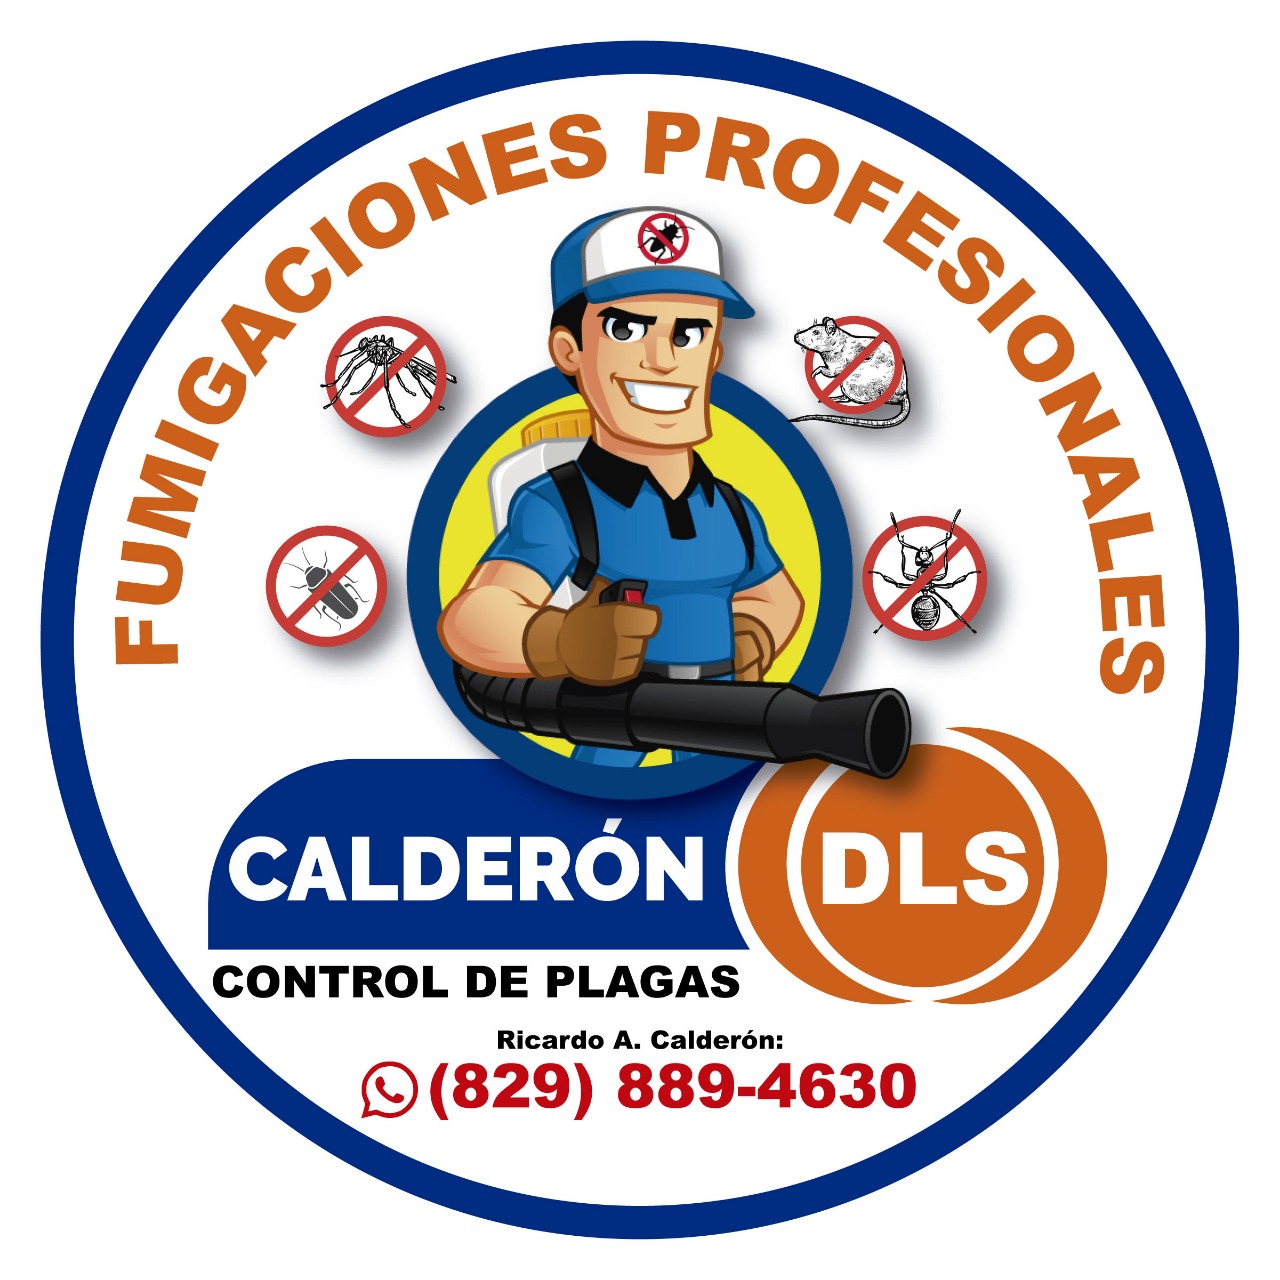 Calderon DLS